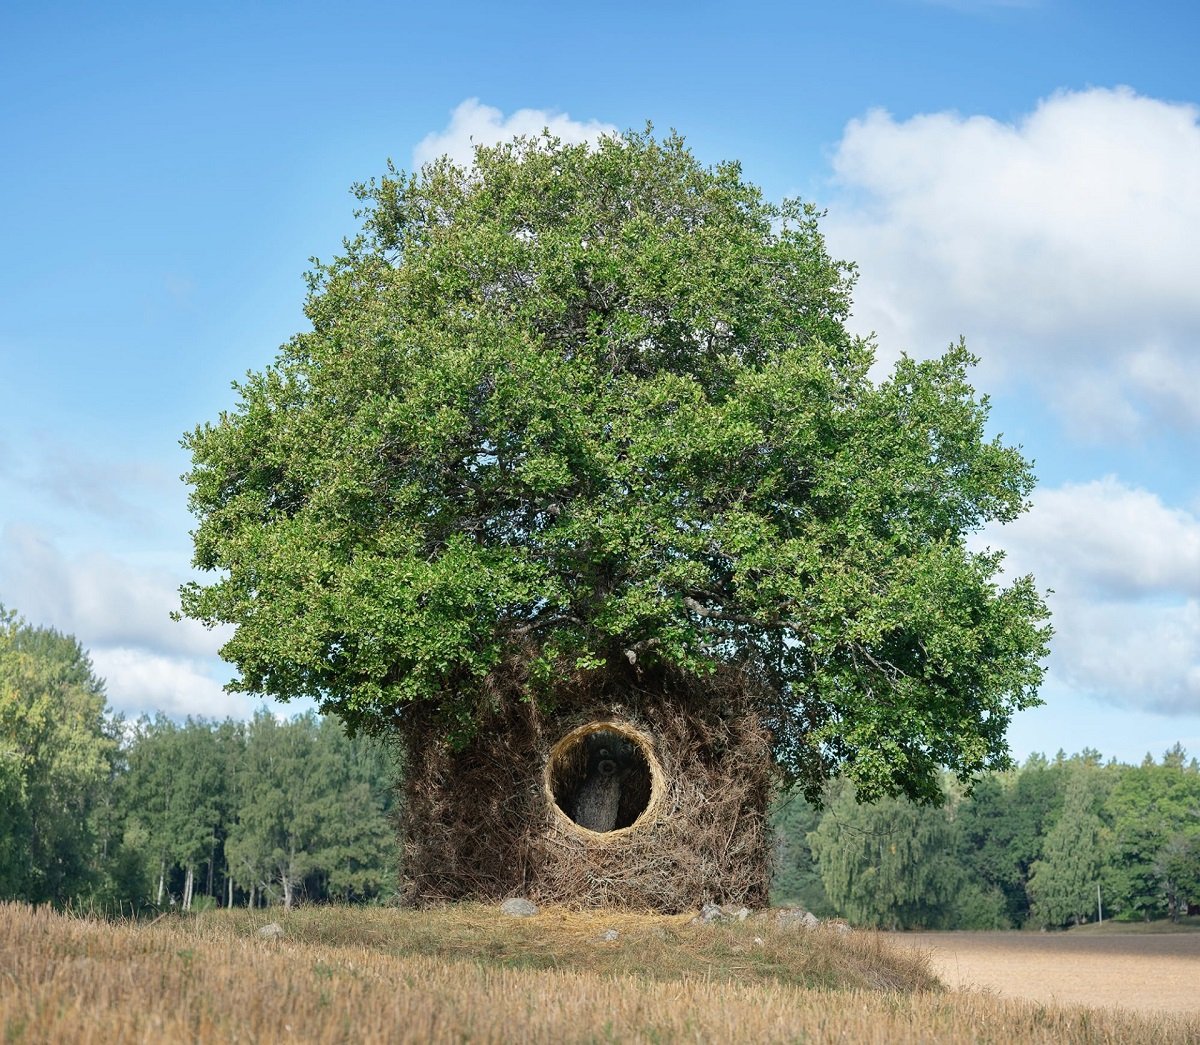 Artistas se unem para criar uma árvore feita de materiais da natureza ao redor. Fotos: Ulf Mejergren and Antti Laitinen